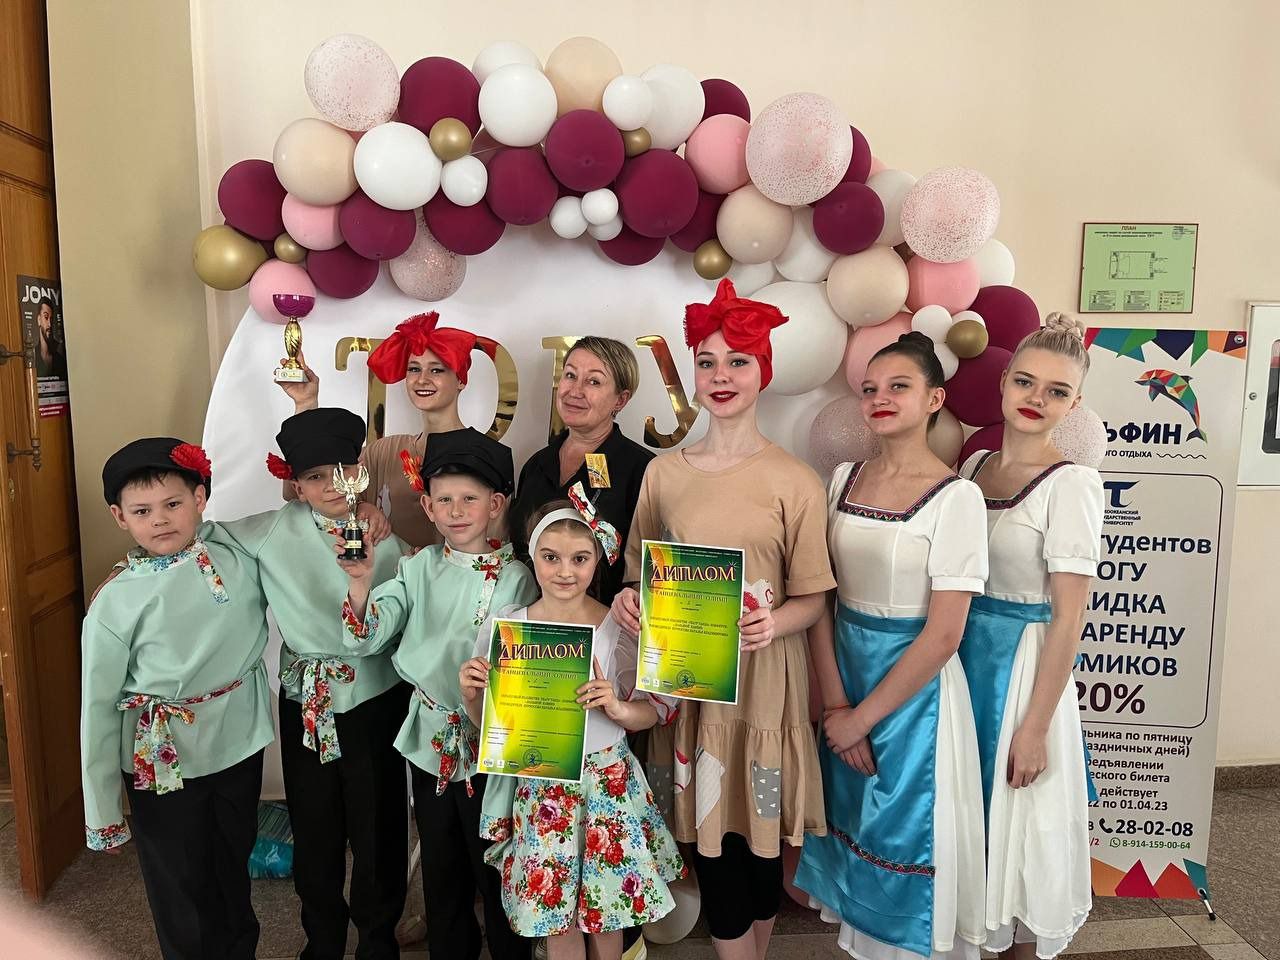 &quot;Образцовый коллектив&quot; театр танца &quot;Конфетти&quot; стал призером танцевальной олимпиады в Хабаровске.